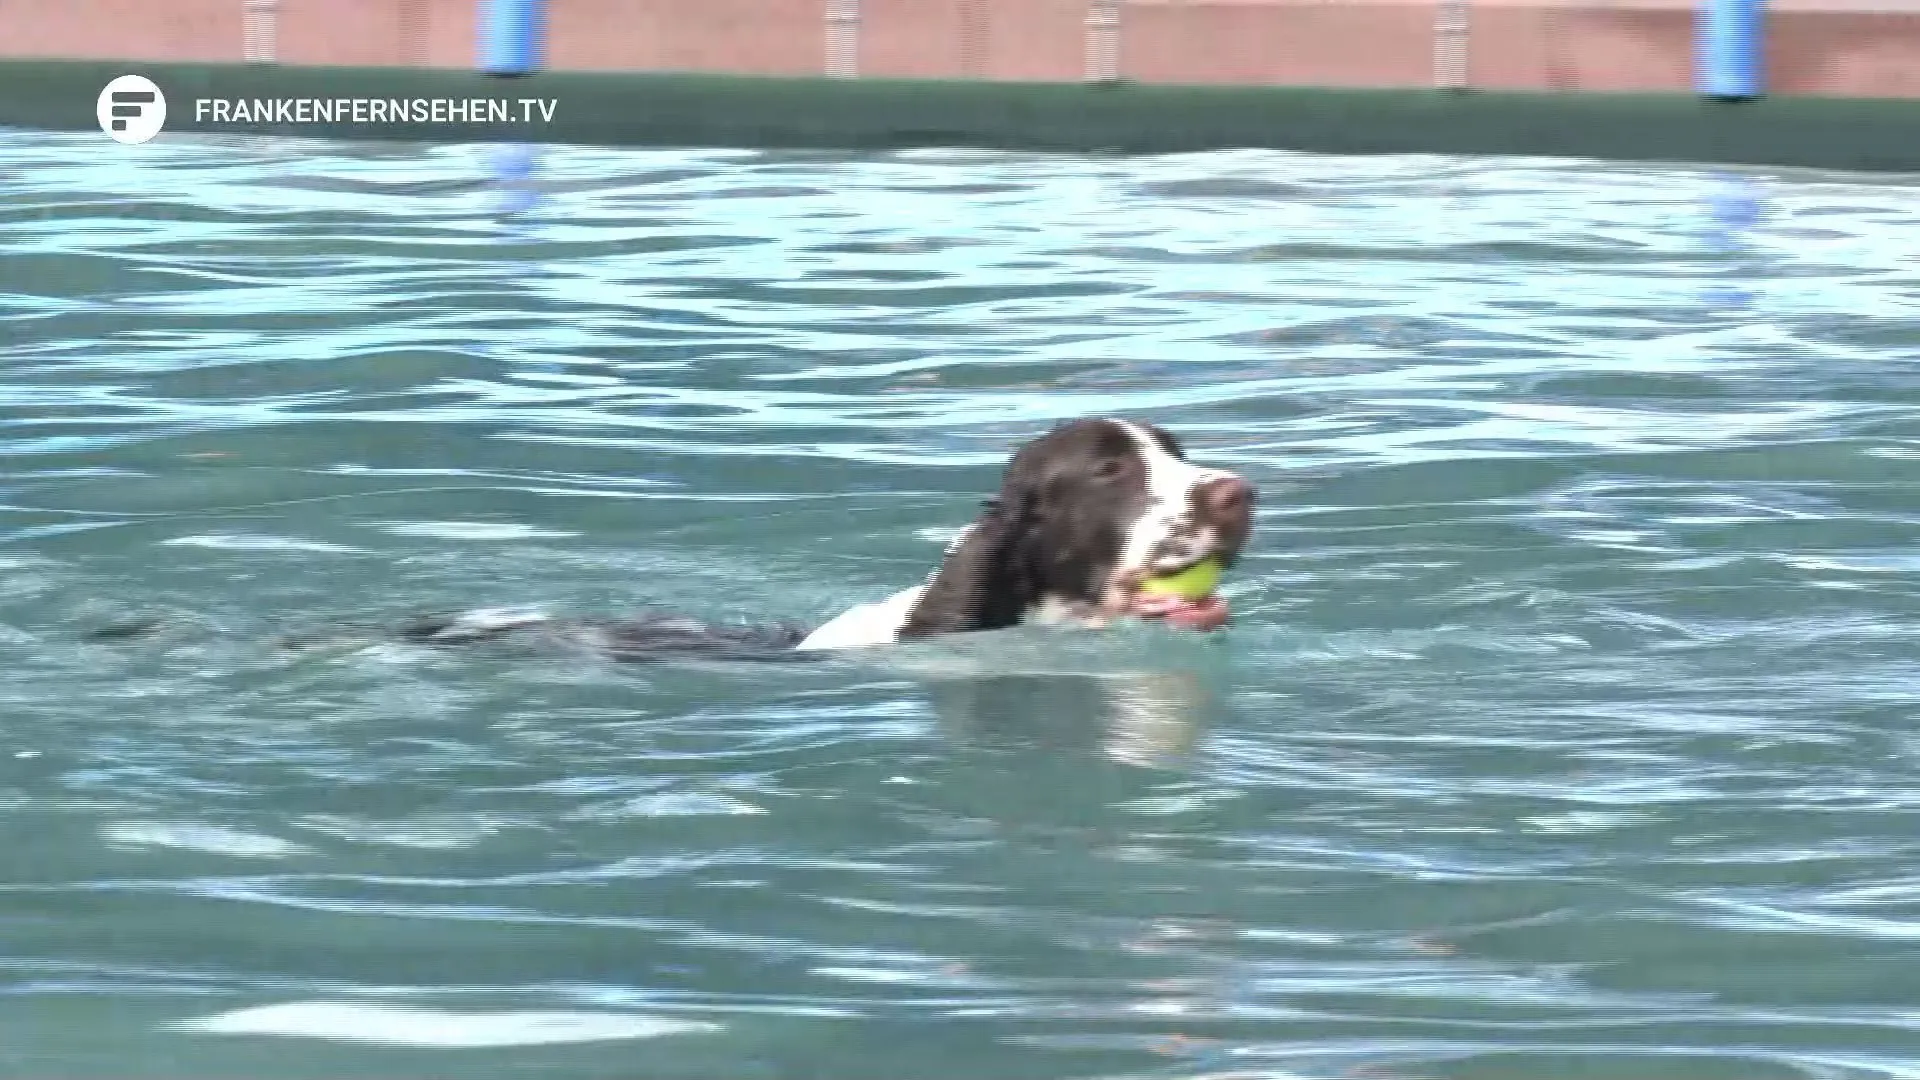 Fim da época das piscinas exteriores: cães nadam na piscina do estádio